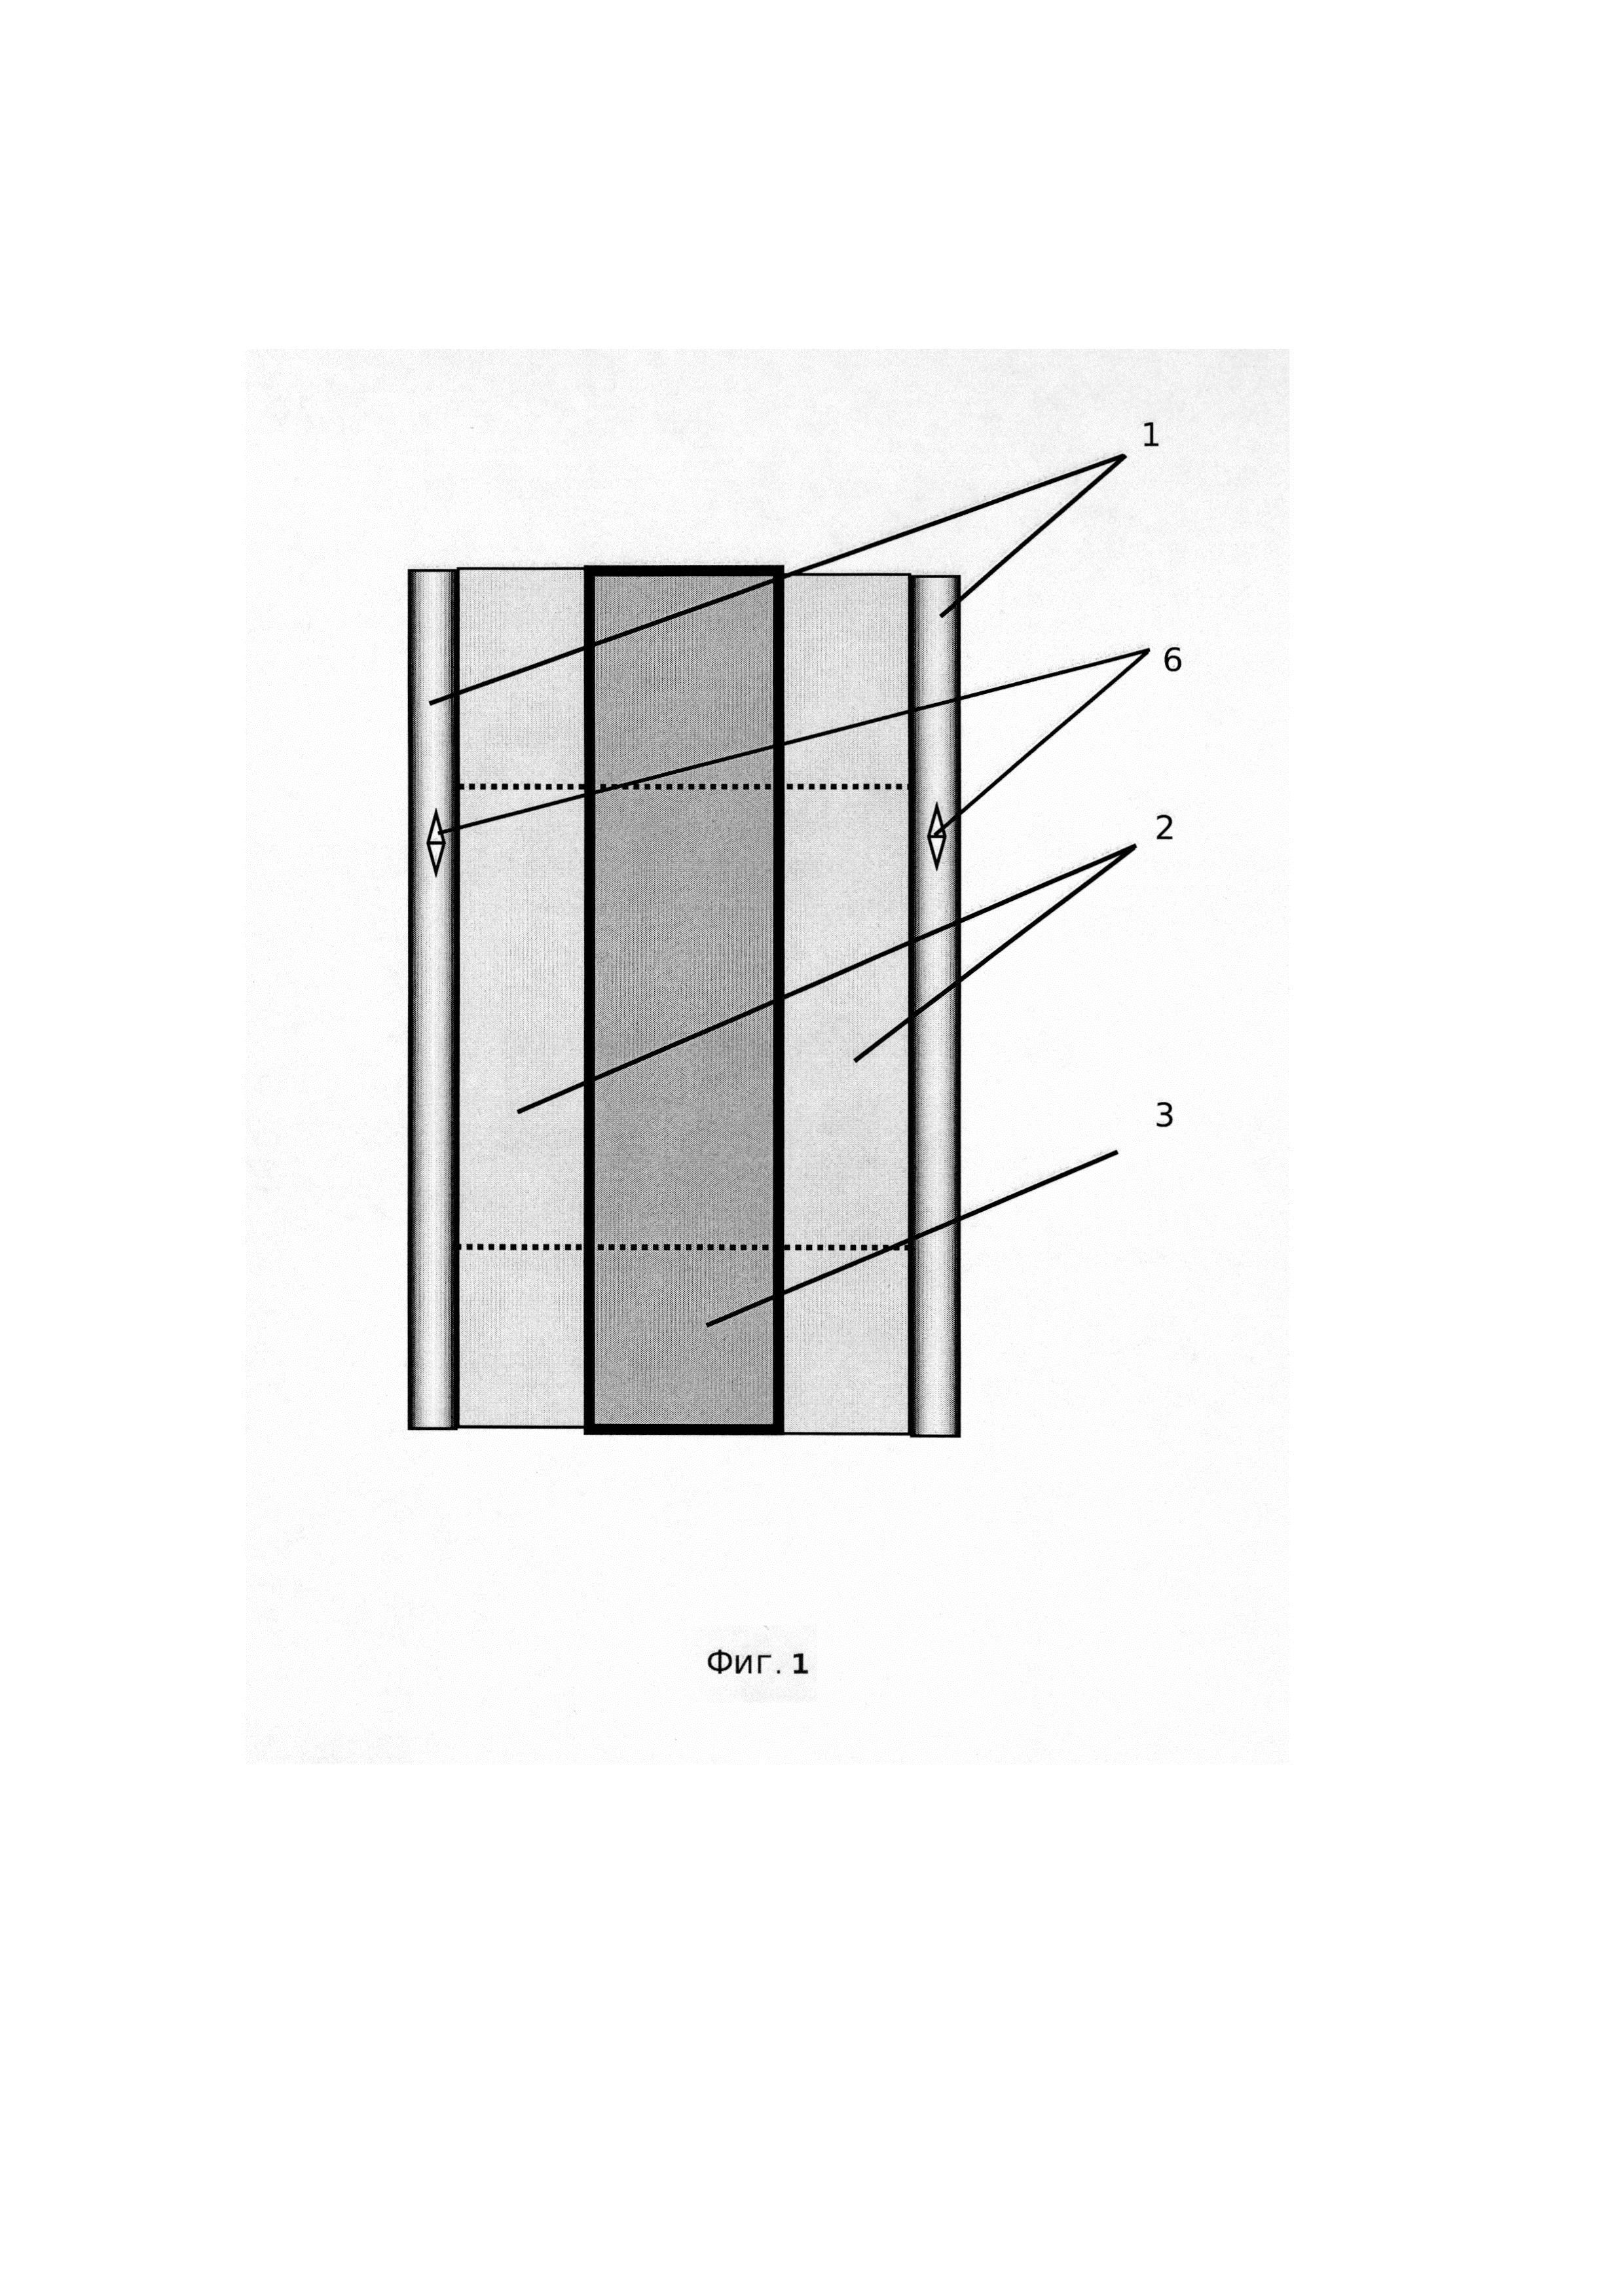 Несъёмная опалубка для монолитного бетона или железобетона из неорганического армированного стекла (варианты)